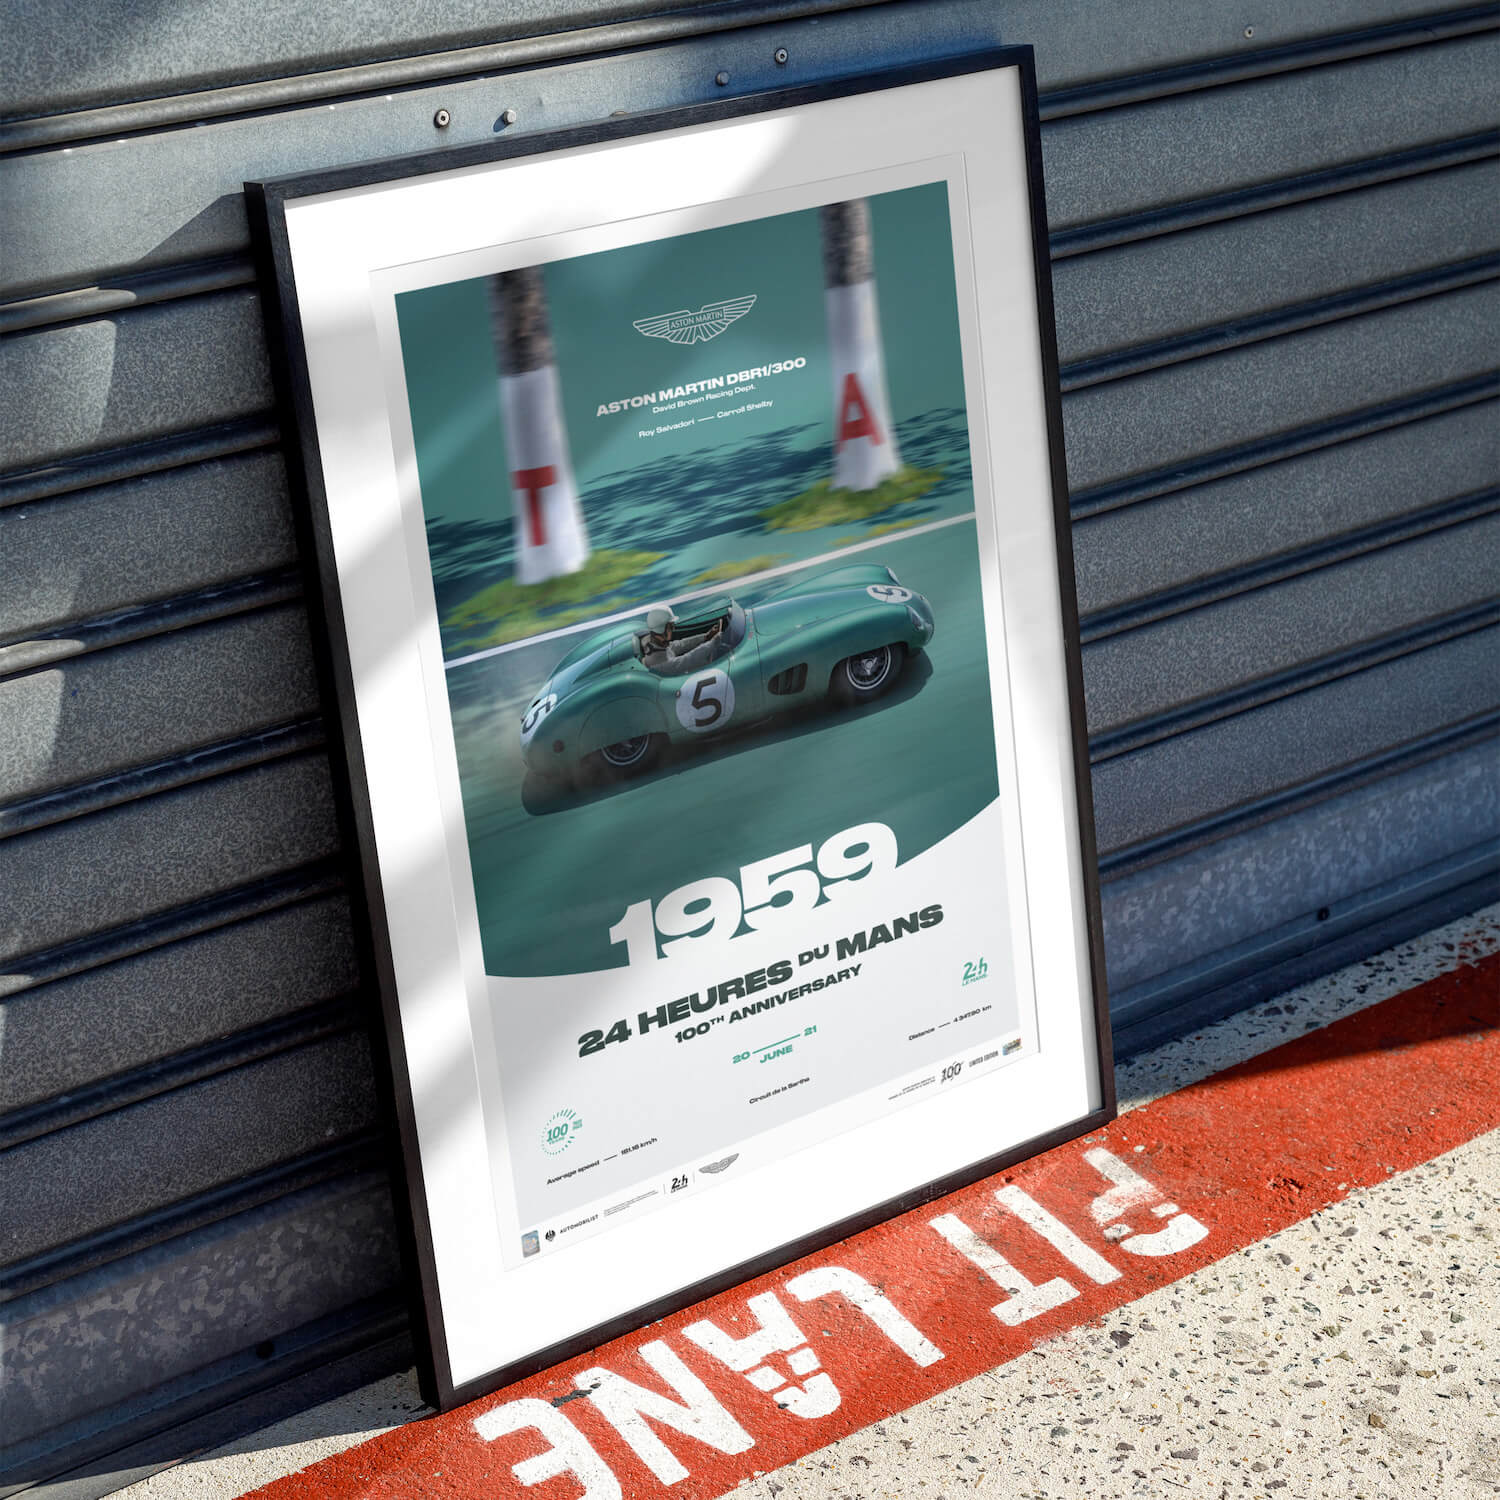 Aston Martin DBR1/300 - 24h du Mans - 100ème anniversaire - 1959